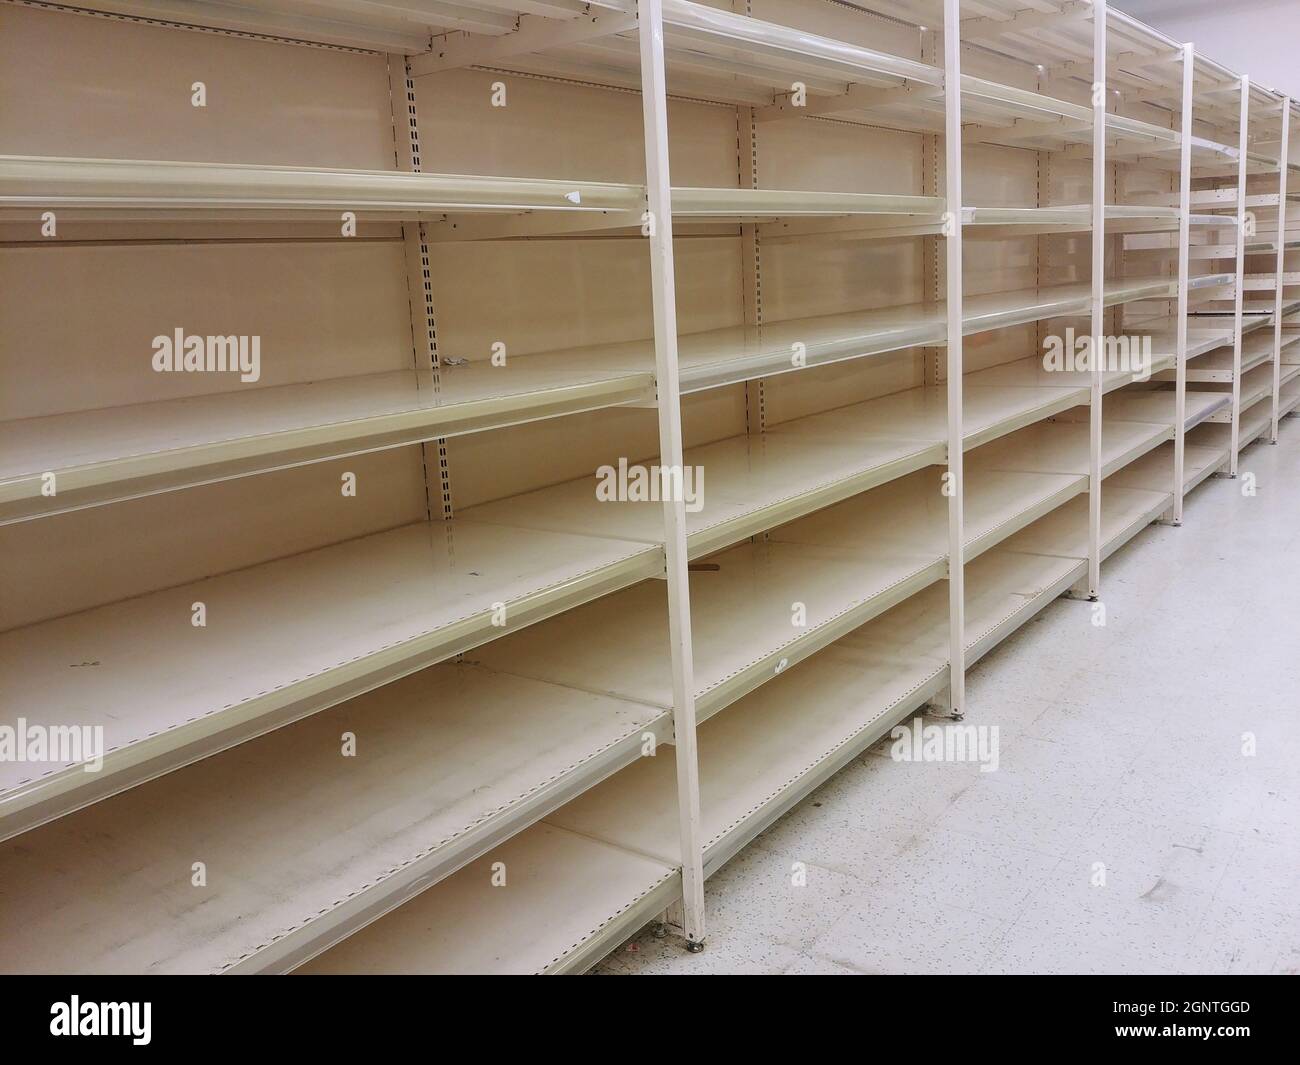 Lebensmittelknappheit, leere Supermarktregale, Stände ohne Artikel, Wirtschaftskrise, ausverkauft. Stockfoto